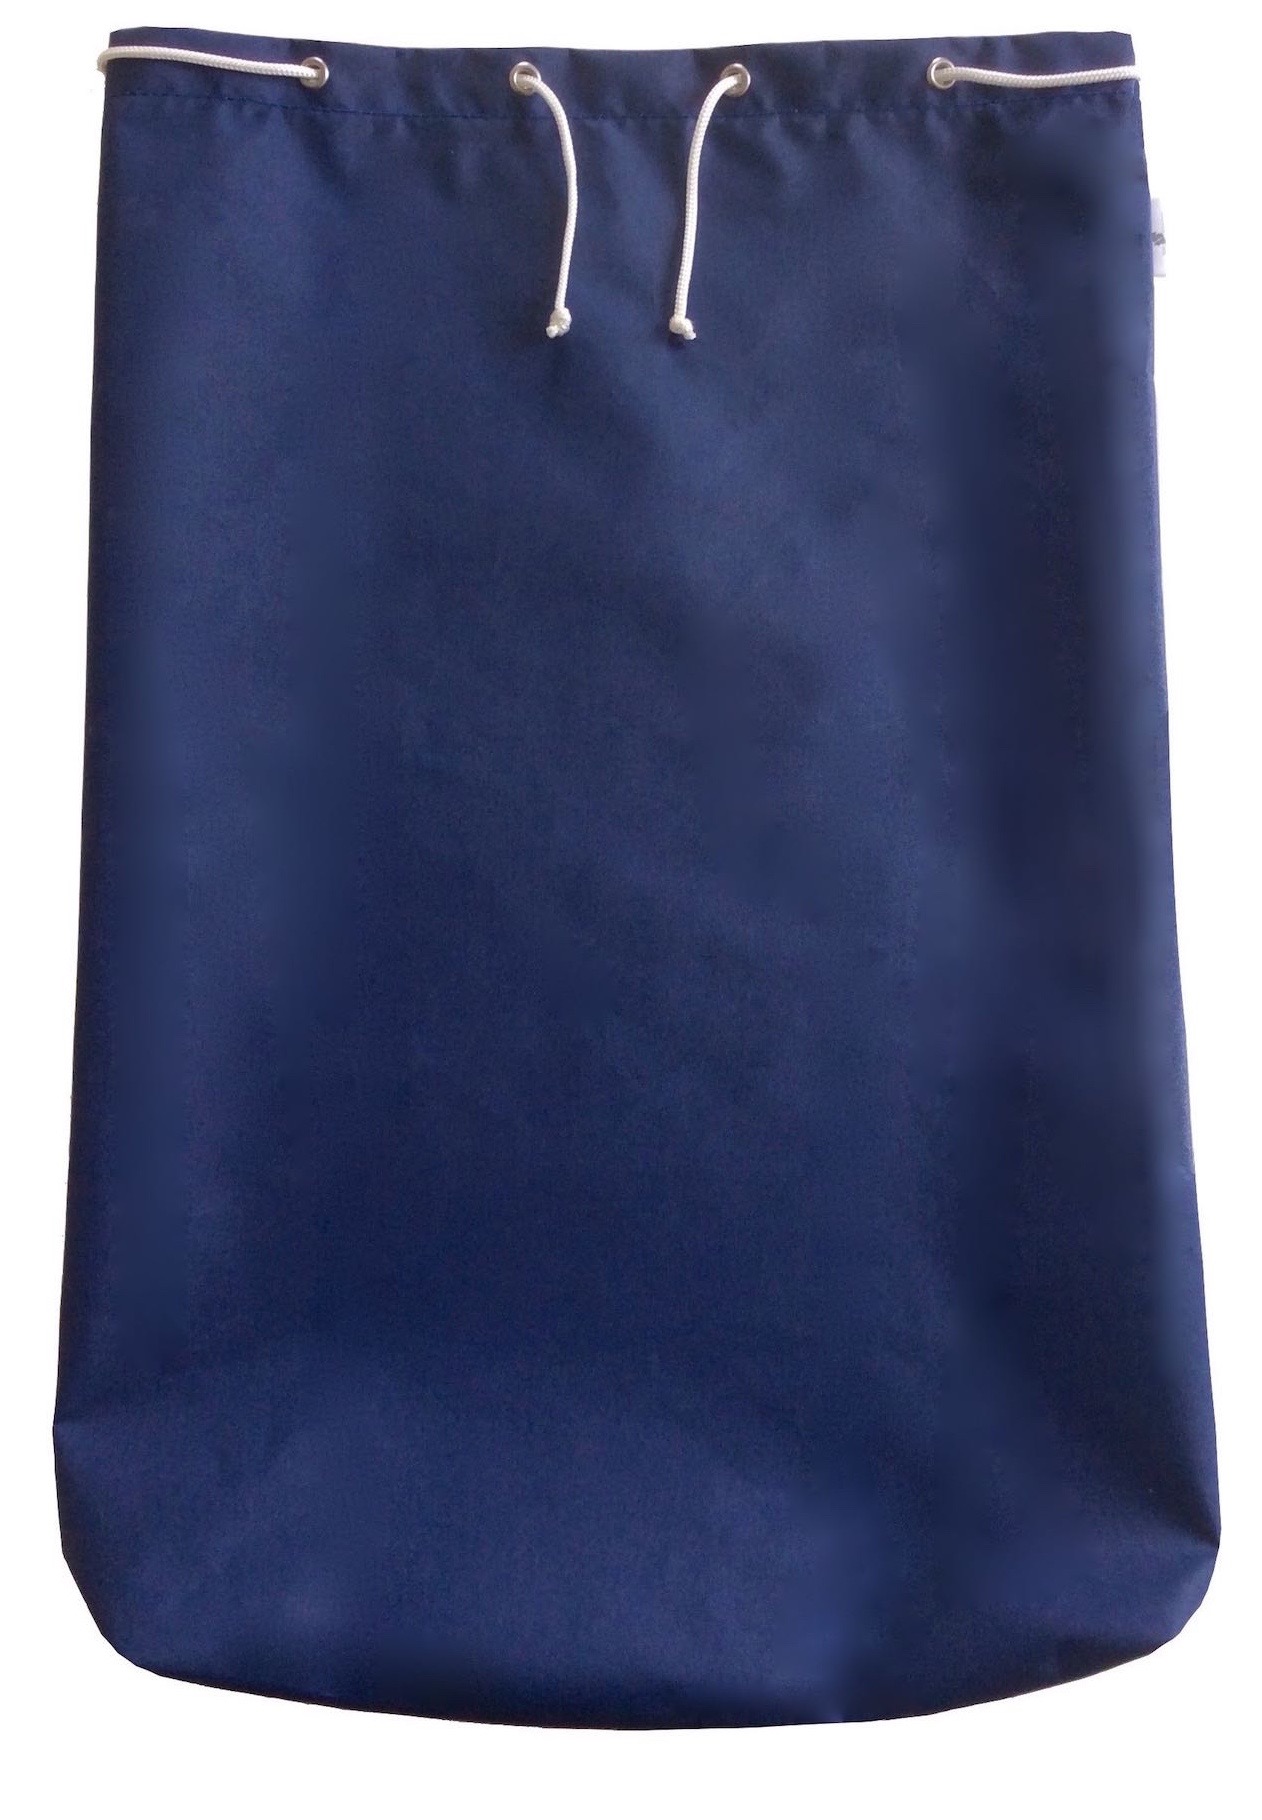 Blauer Segelsack mit Ösen und Kordel.